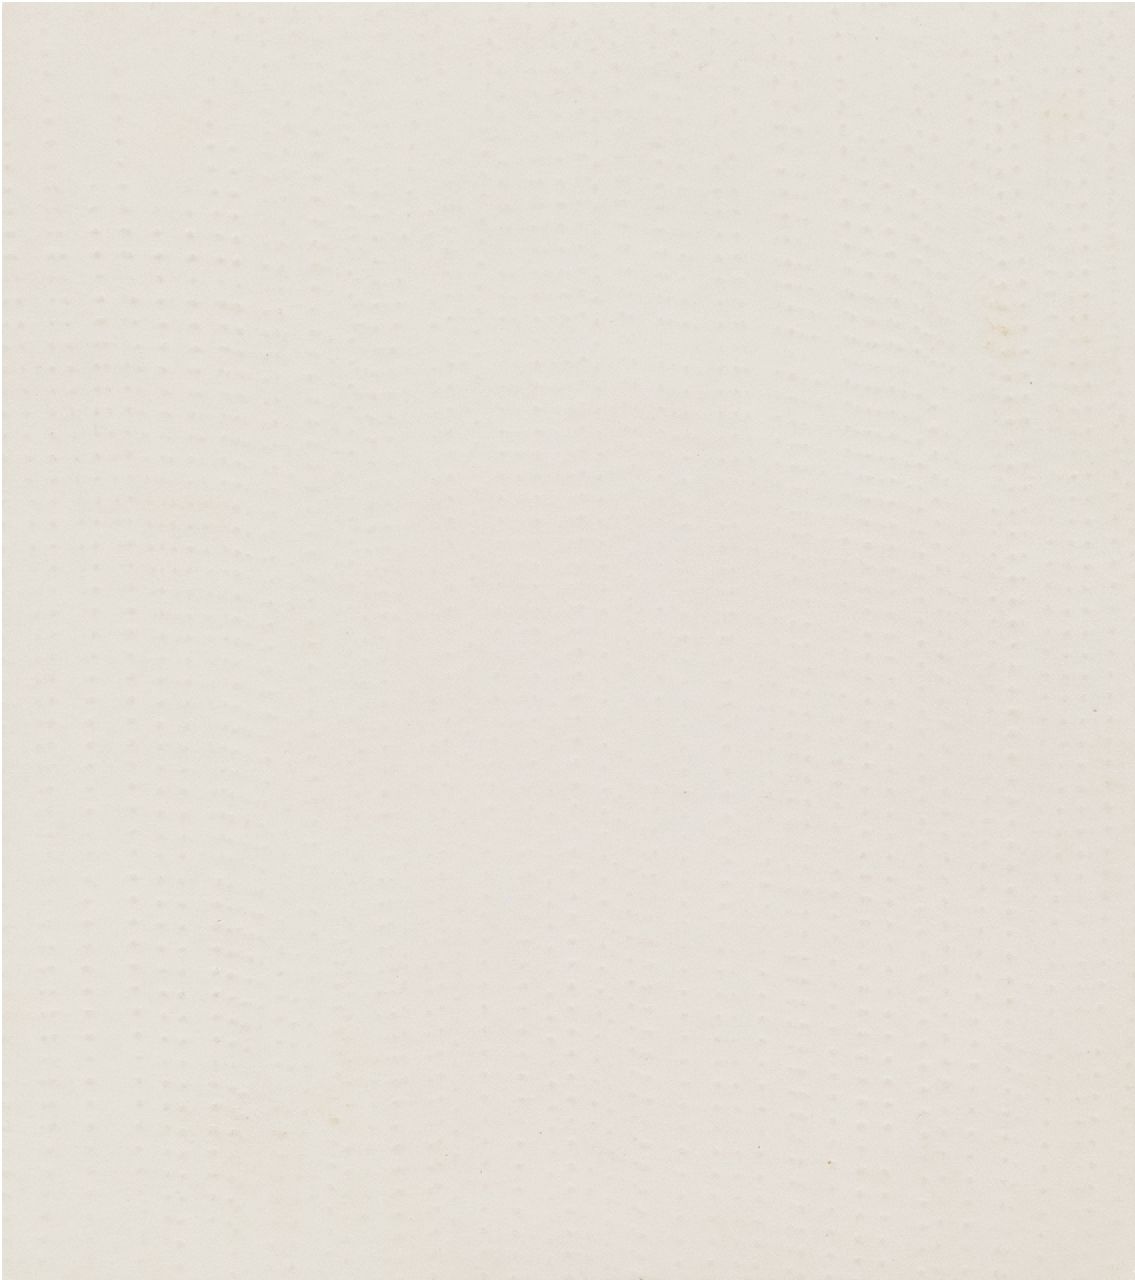 herman de vries | Zonder titel, reliëf op papier, 12,6 x 11,2 cm, gesigneerd verso en verso gedateerd 17 II 61